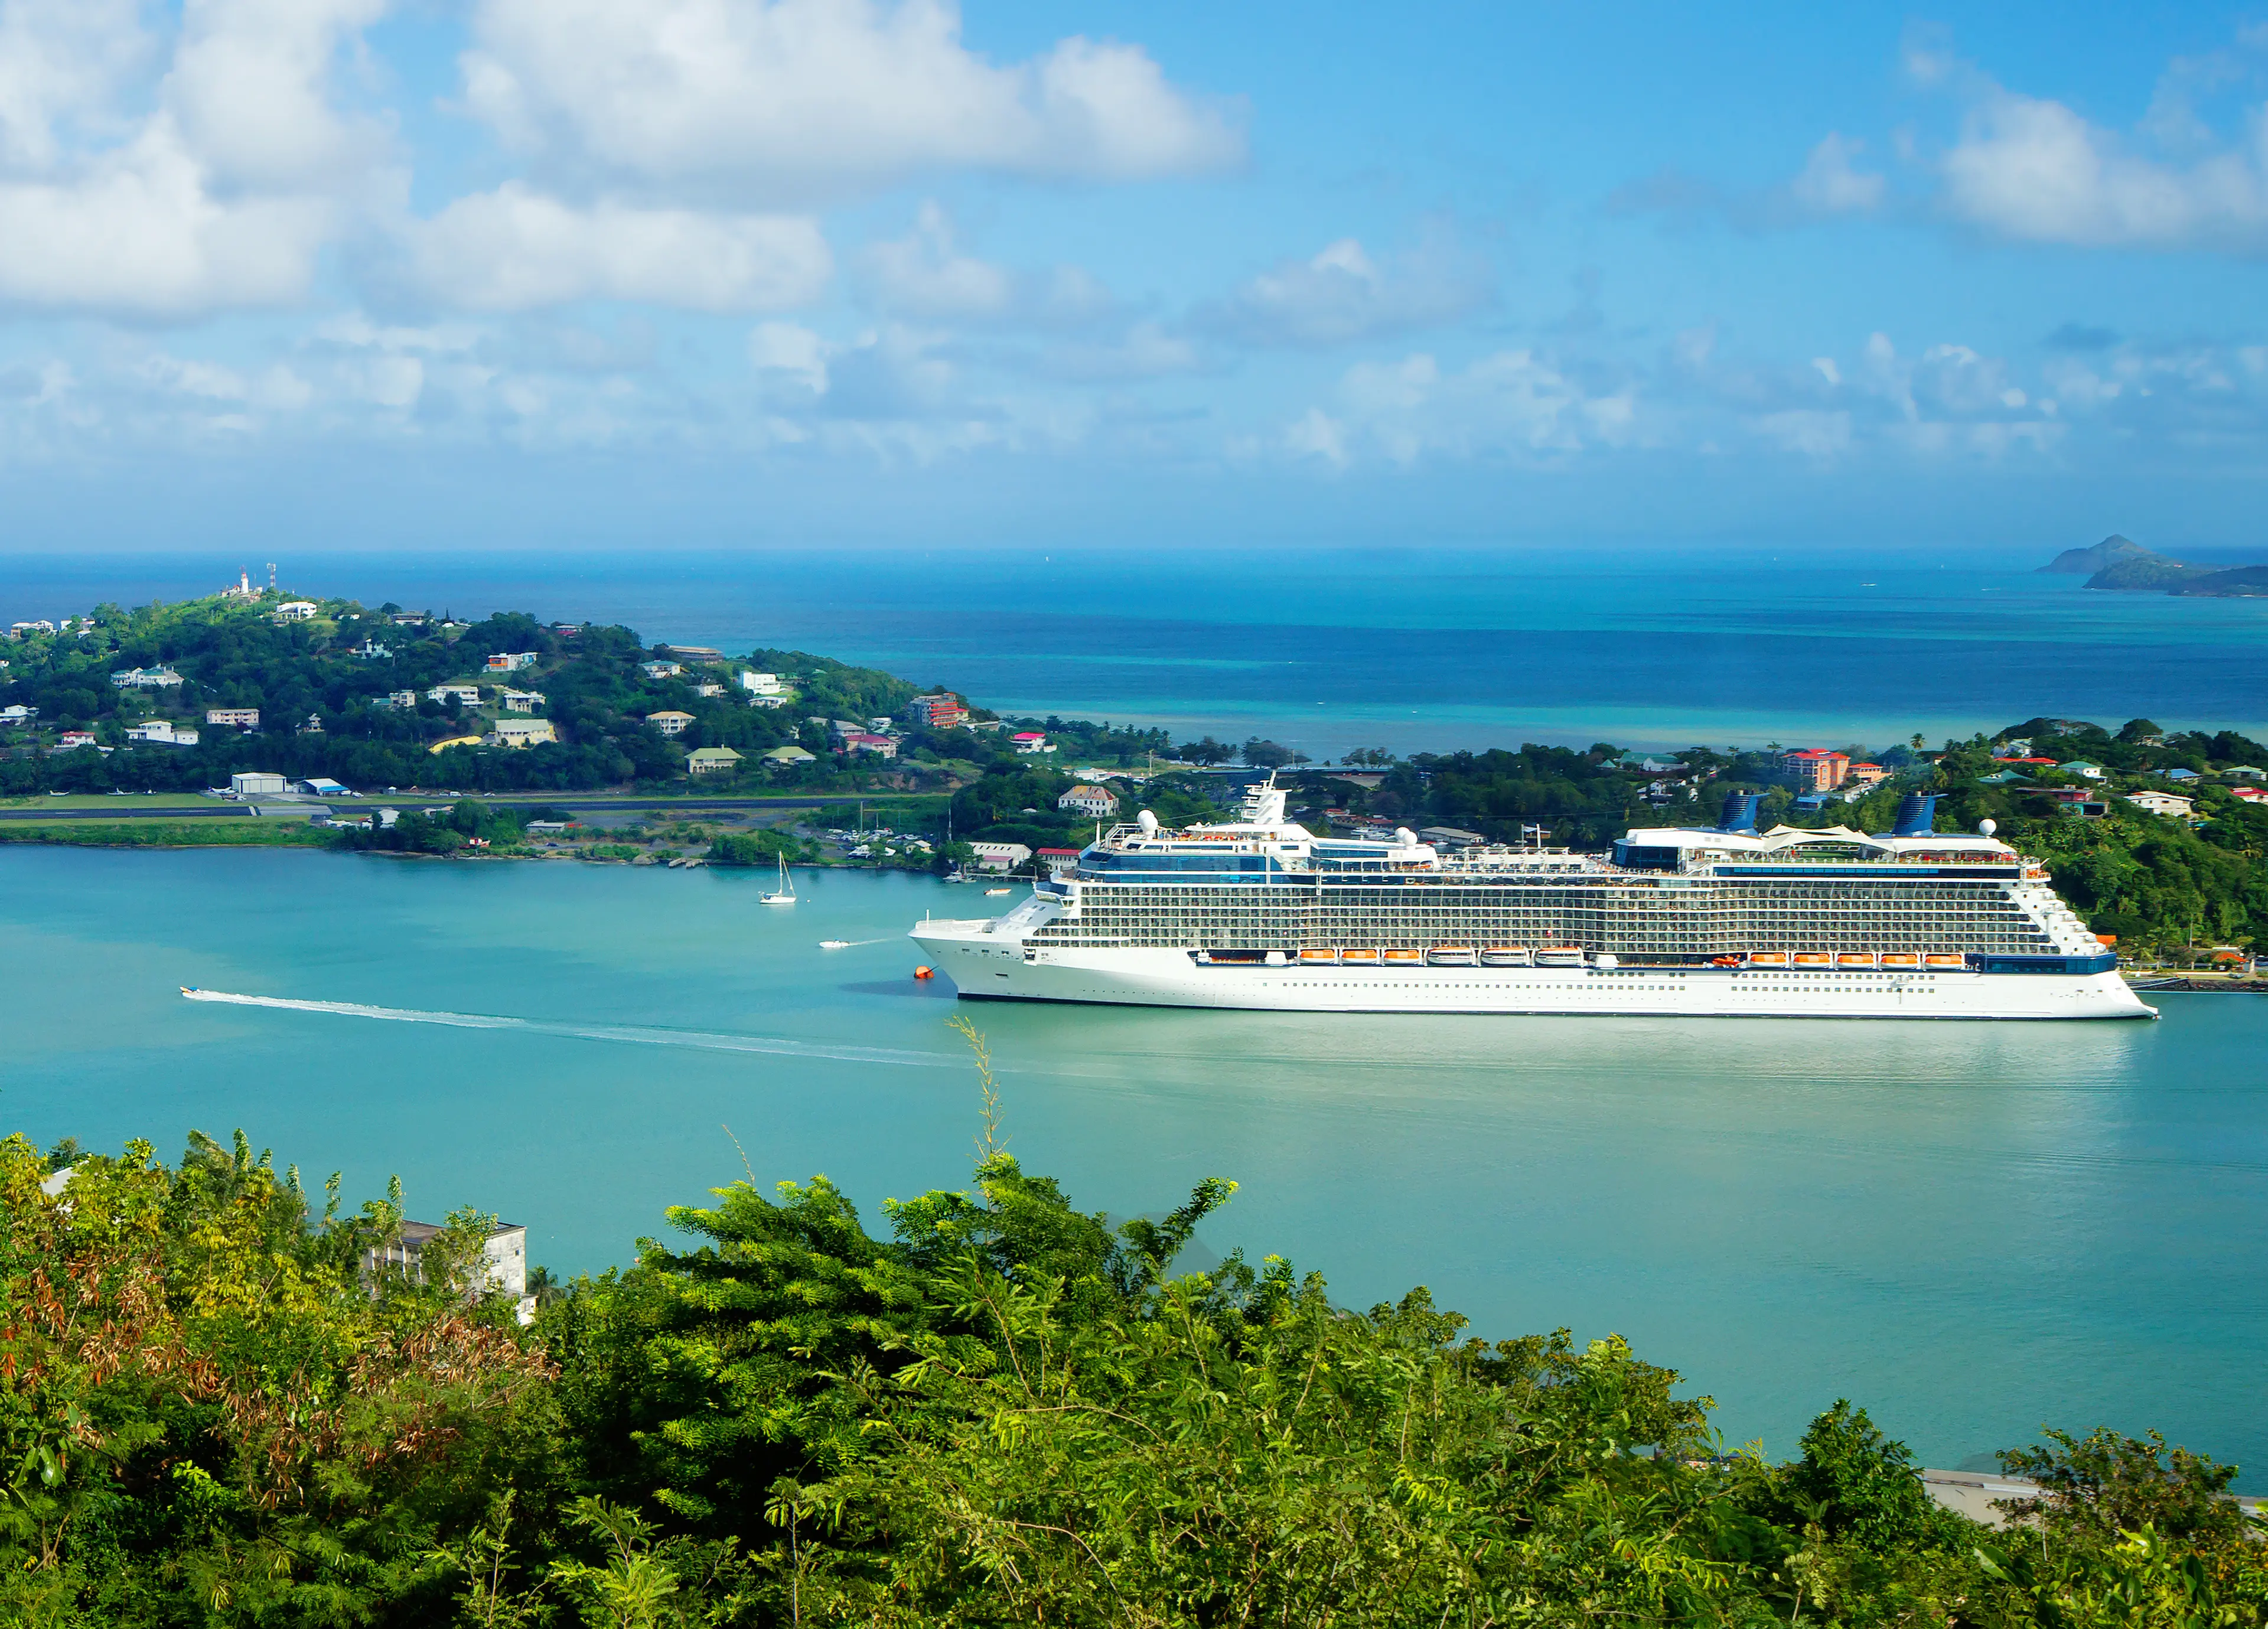 Cruise ship approaching the island